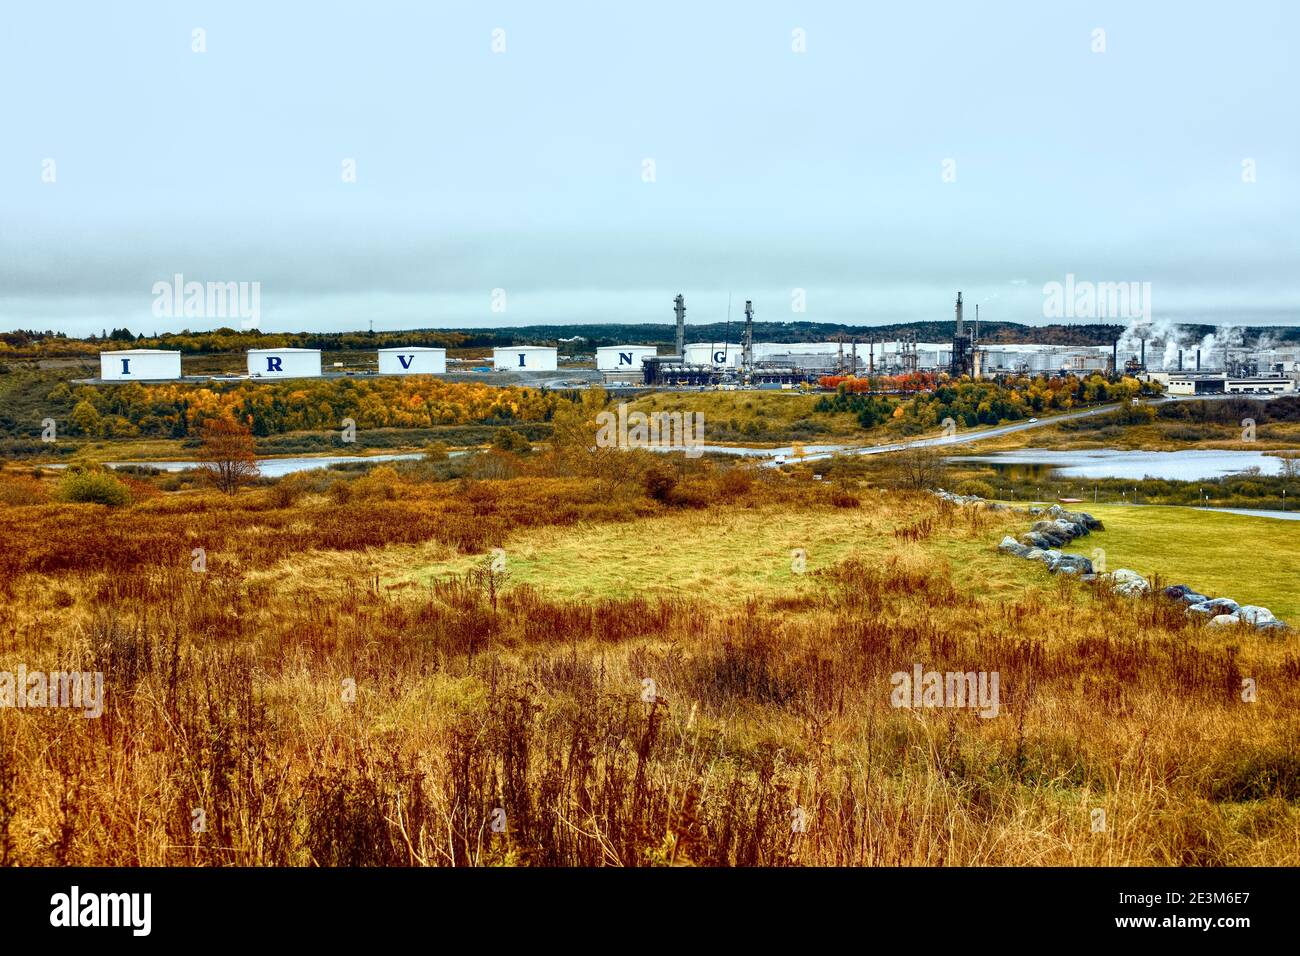 Una imagen de otoño de la gran refinería de petróleo de Irving en la zona rural de Saint John New Brunswick Canadá con el follaje local que da vuelta a los colores brillantes del otoño. Foto de stock